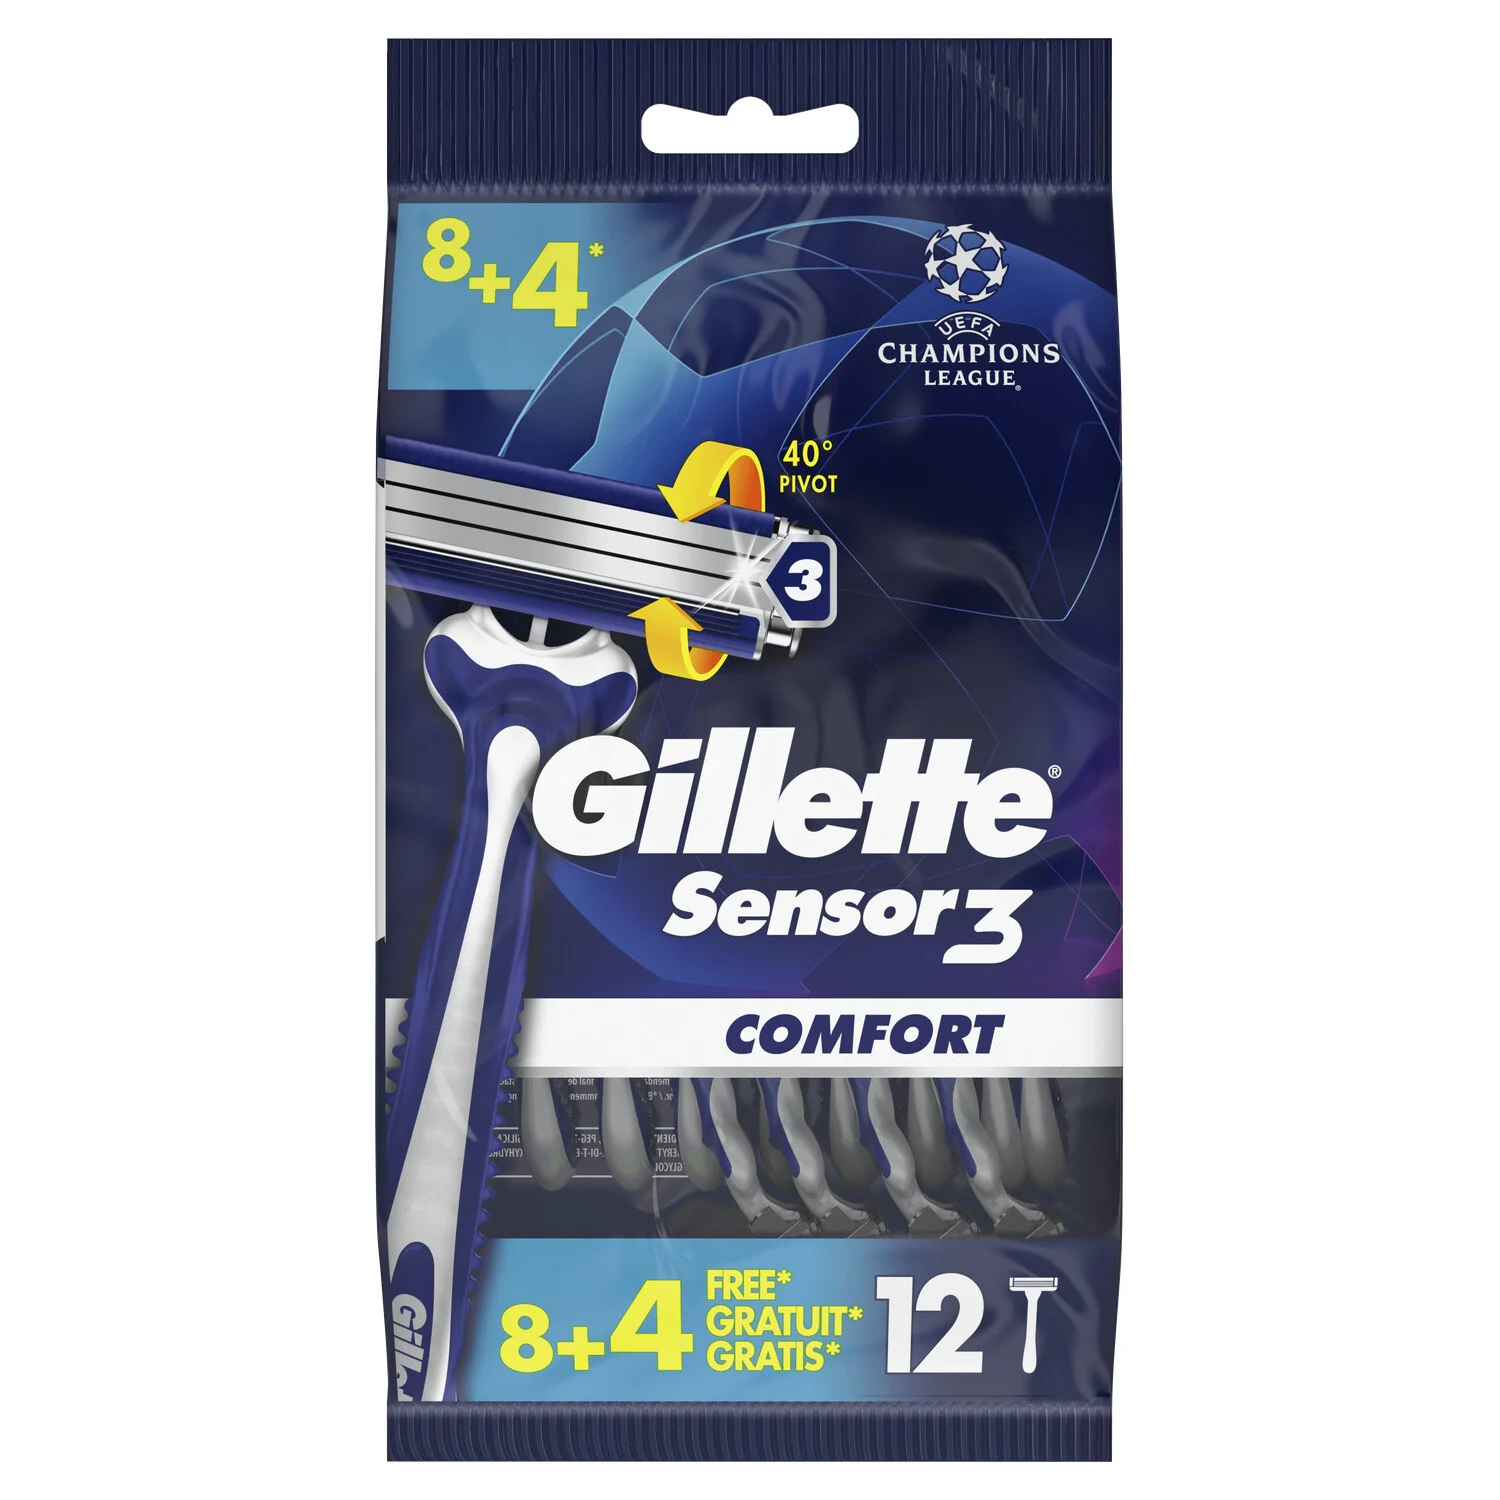 Sensor3 Comfort wegwerpscheermesjes voor mannen - Gillette